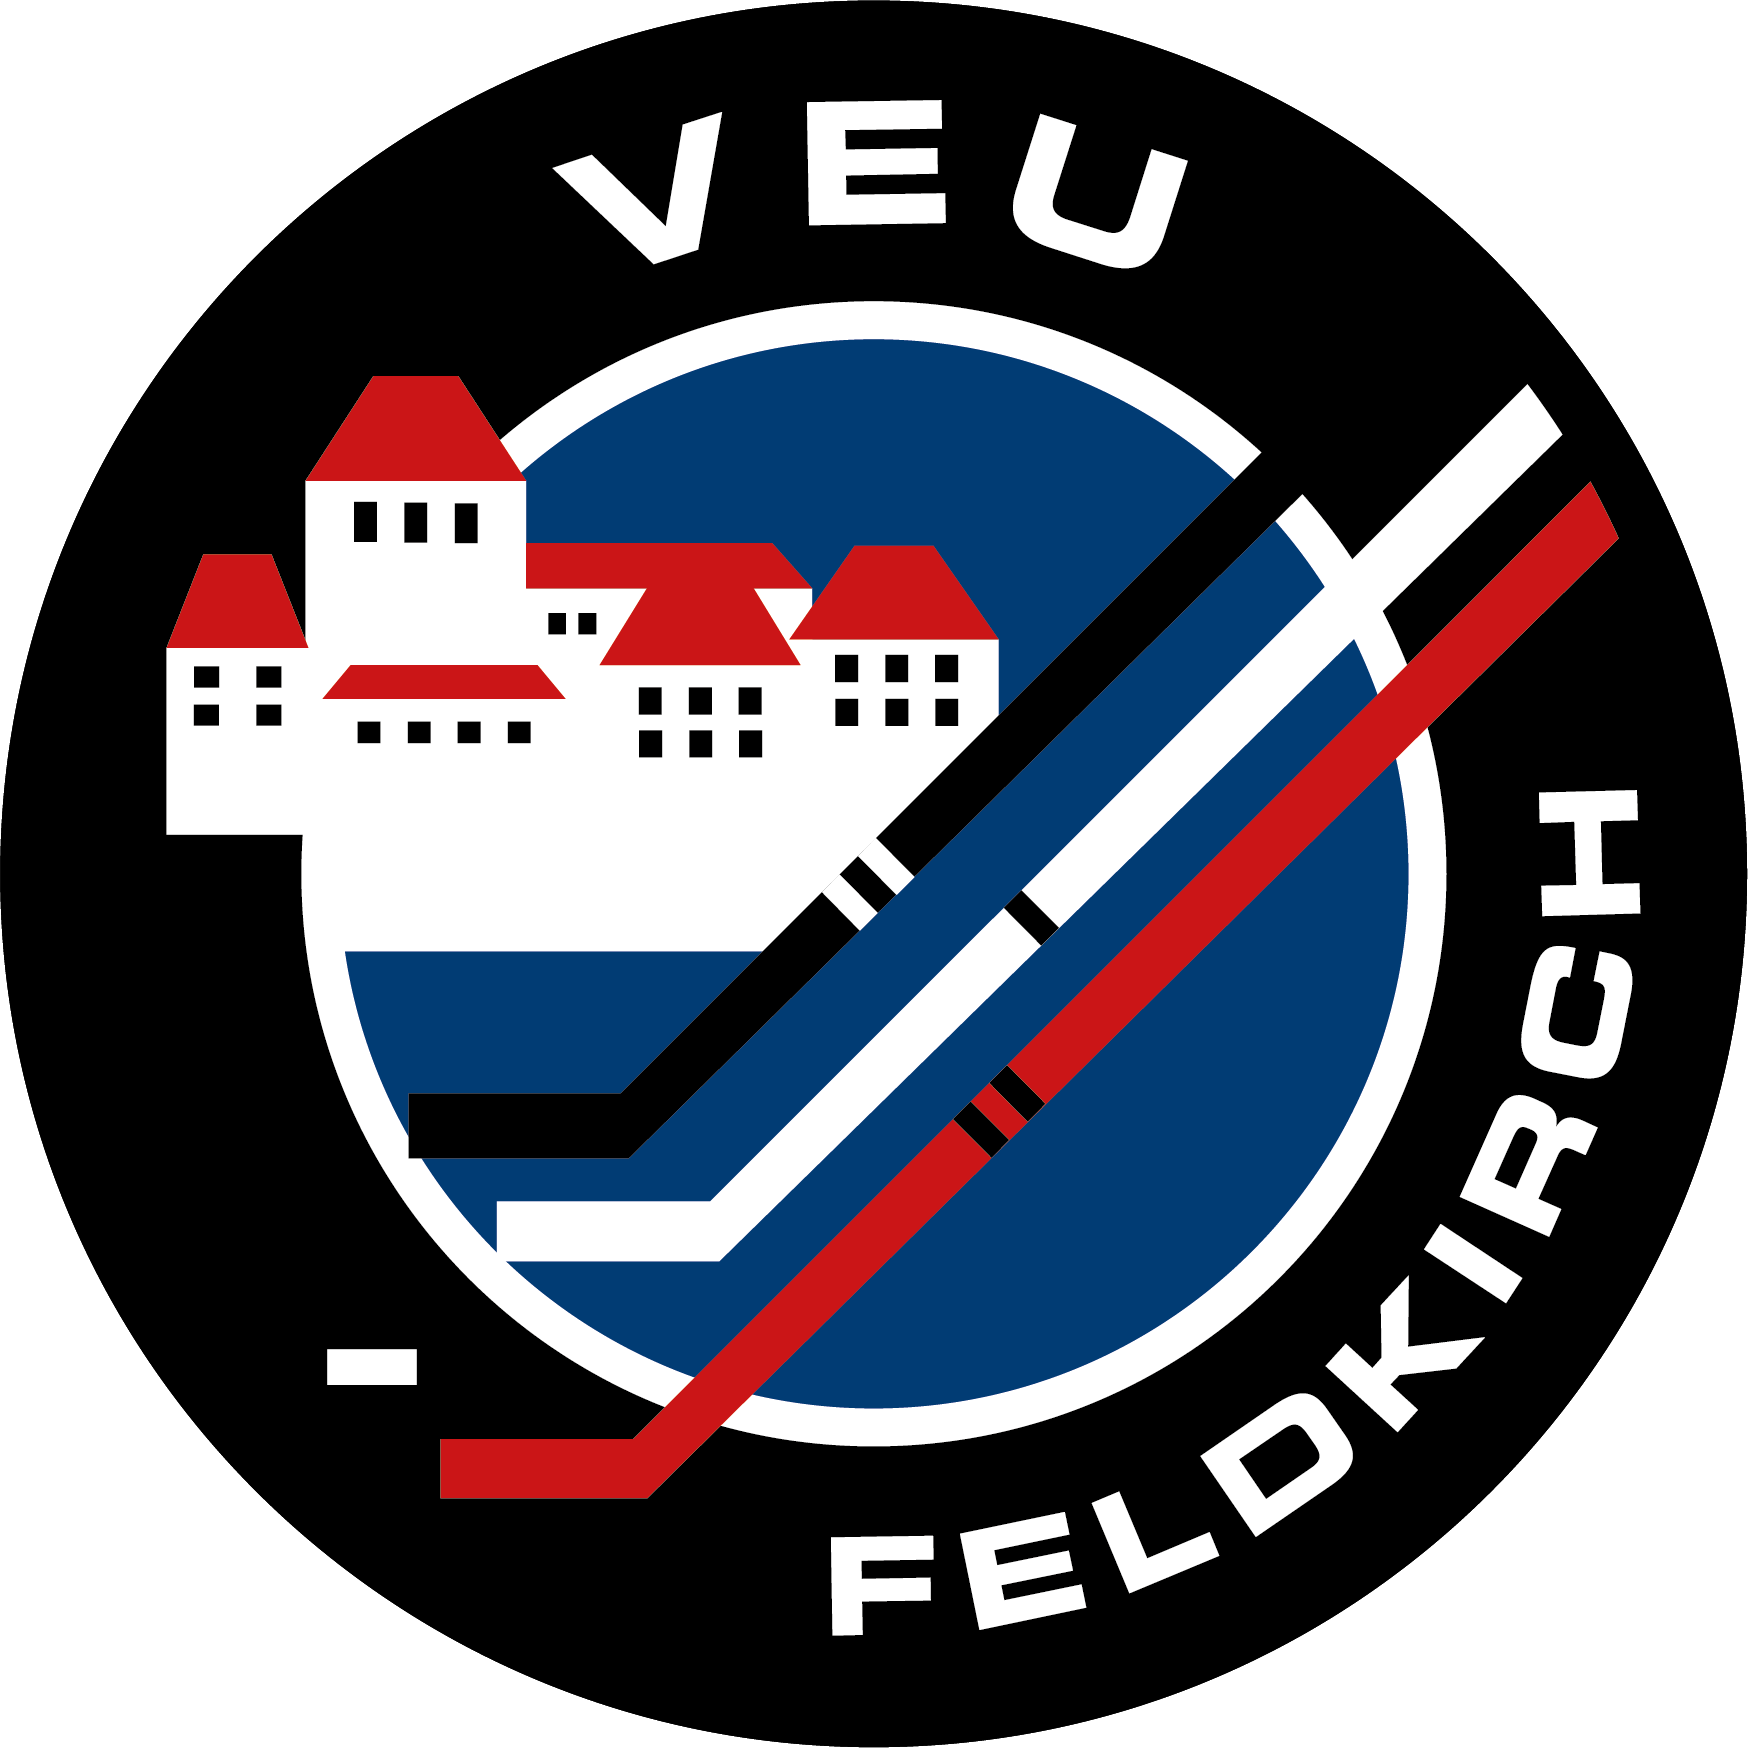 VEU Feldkirch